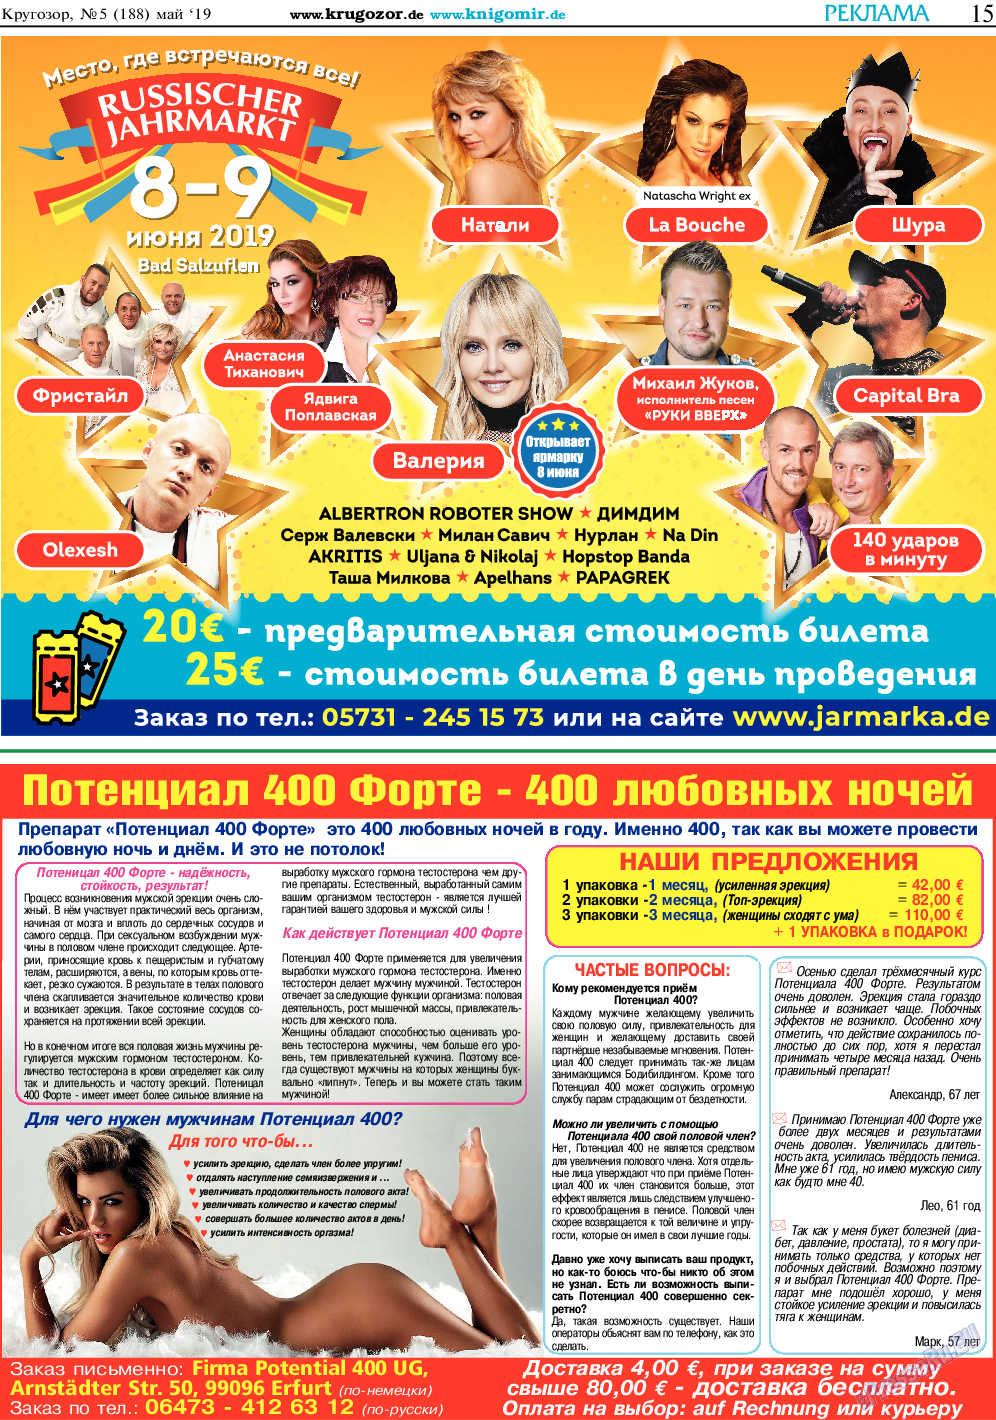 Кругозор, газета. 2019 №5 стр.15